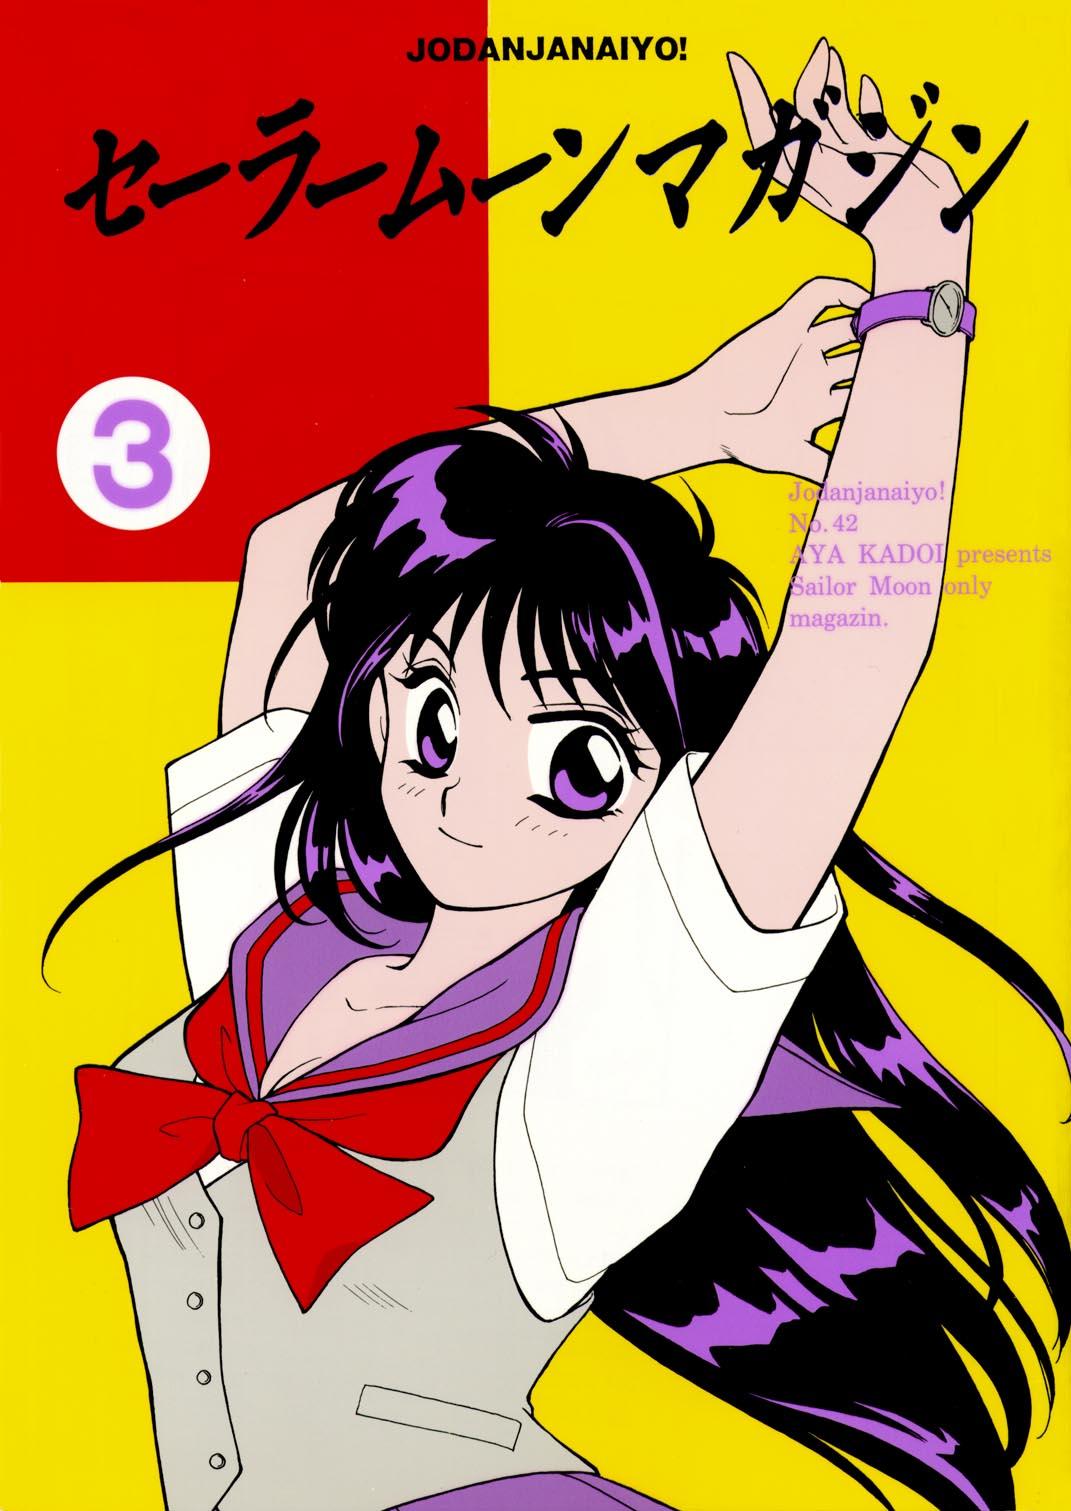 Sailor Moon JodanJanaiyo 54